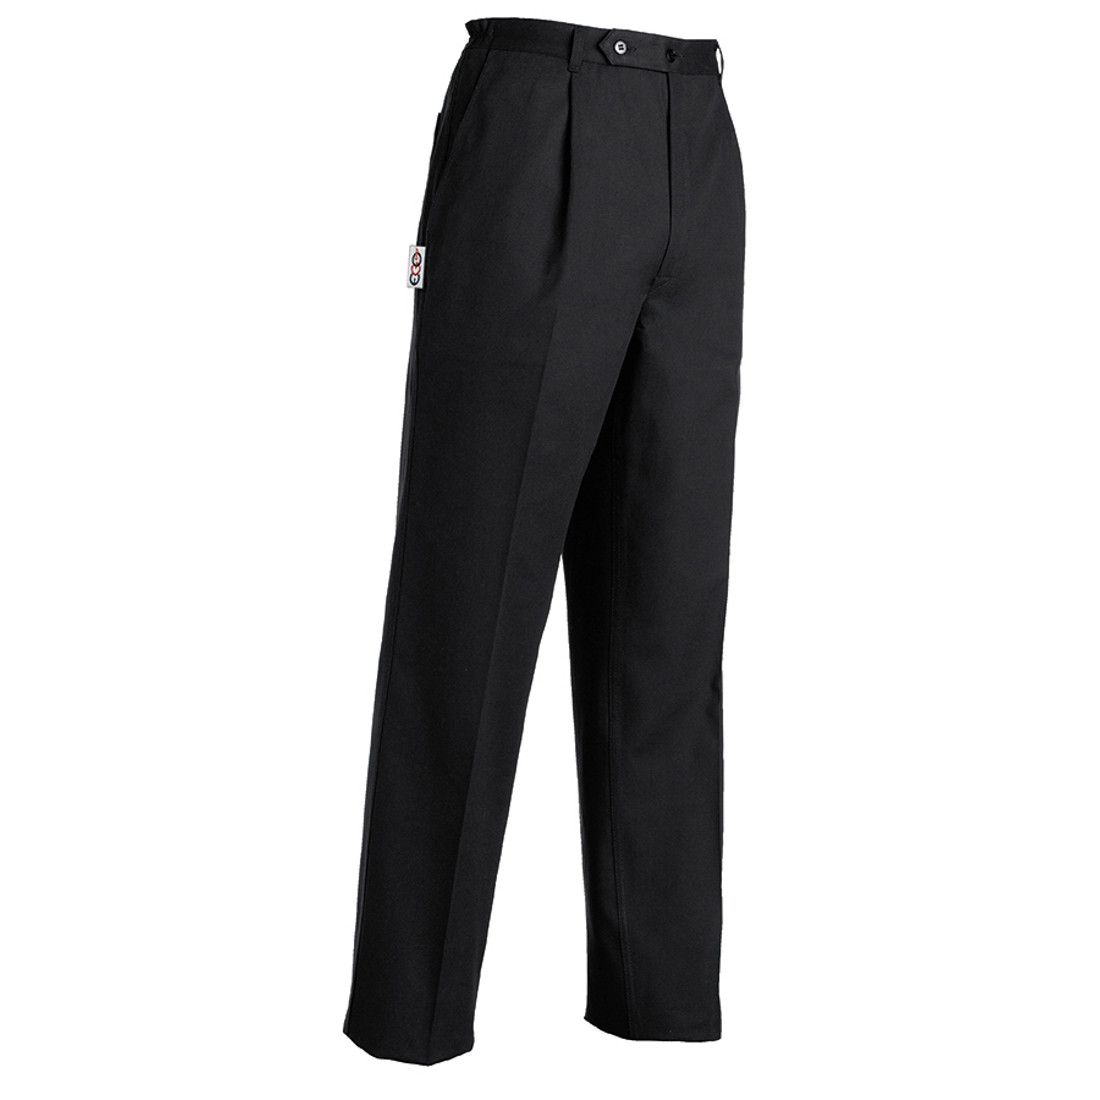 Pantalon unisexe, 65% polyester/35% coton - Les vêtements de protection